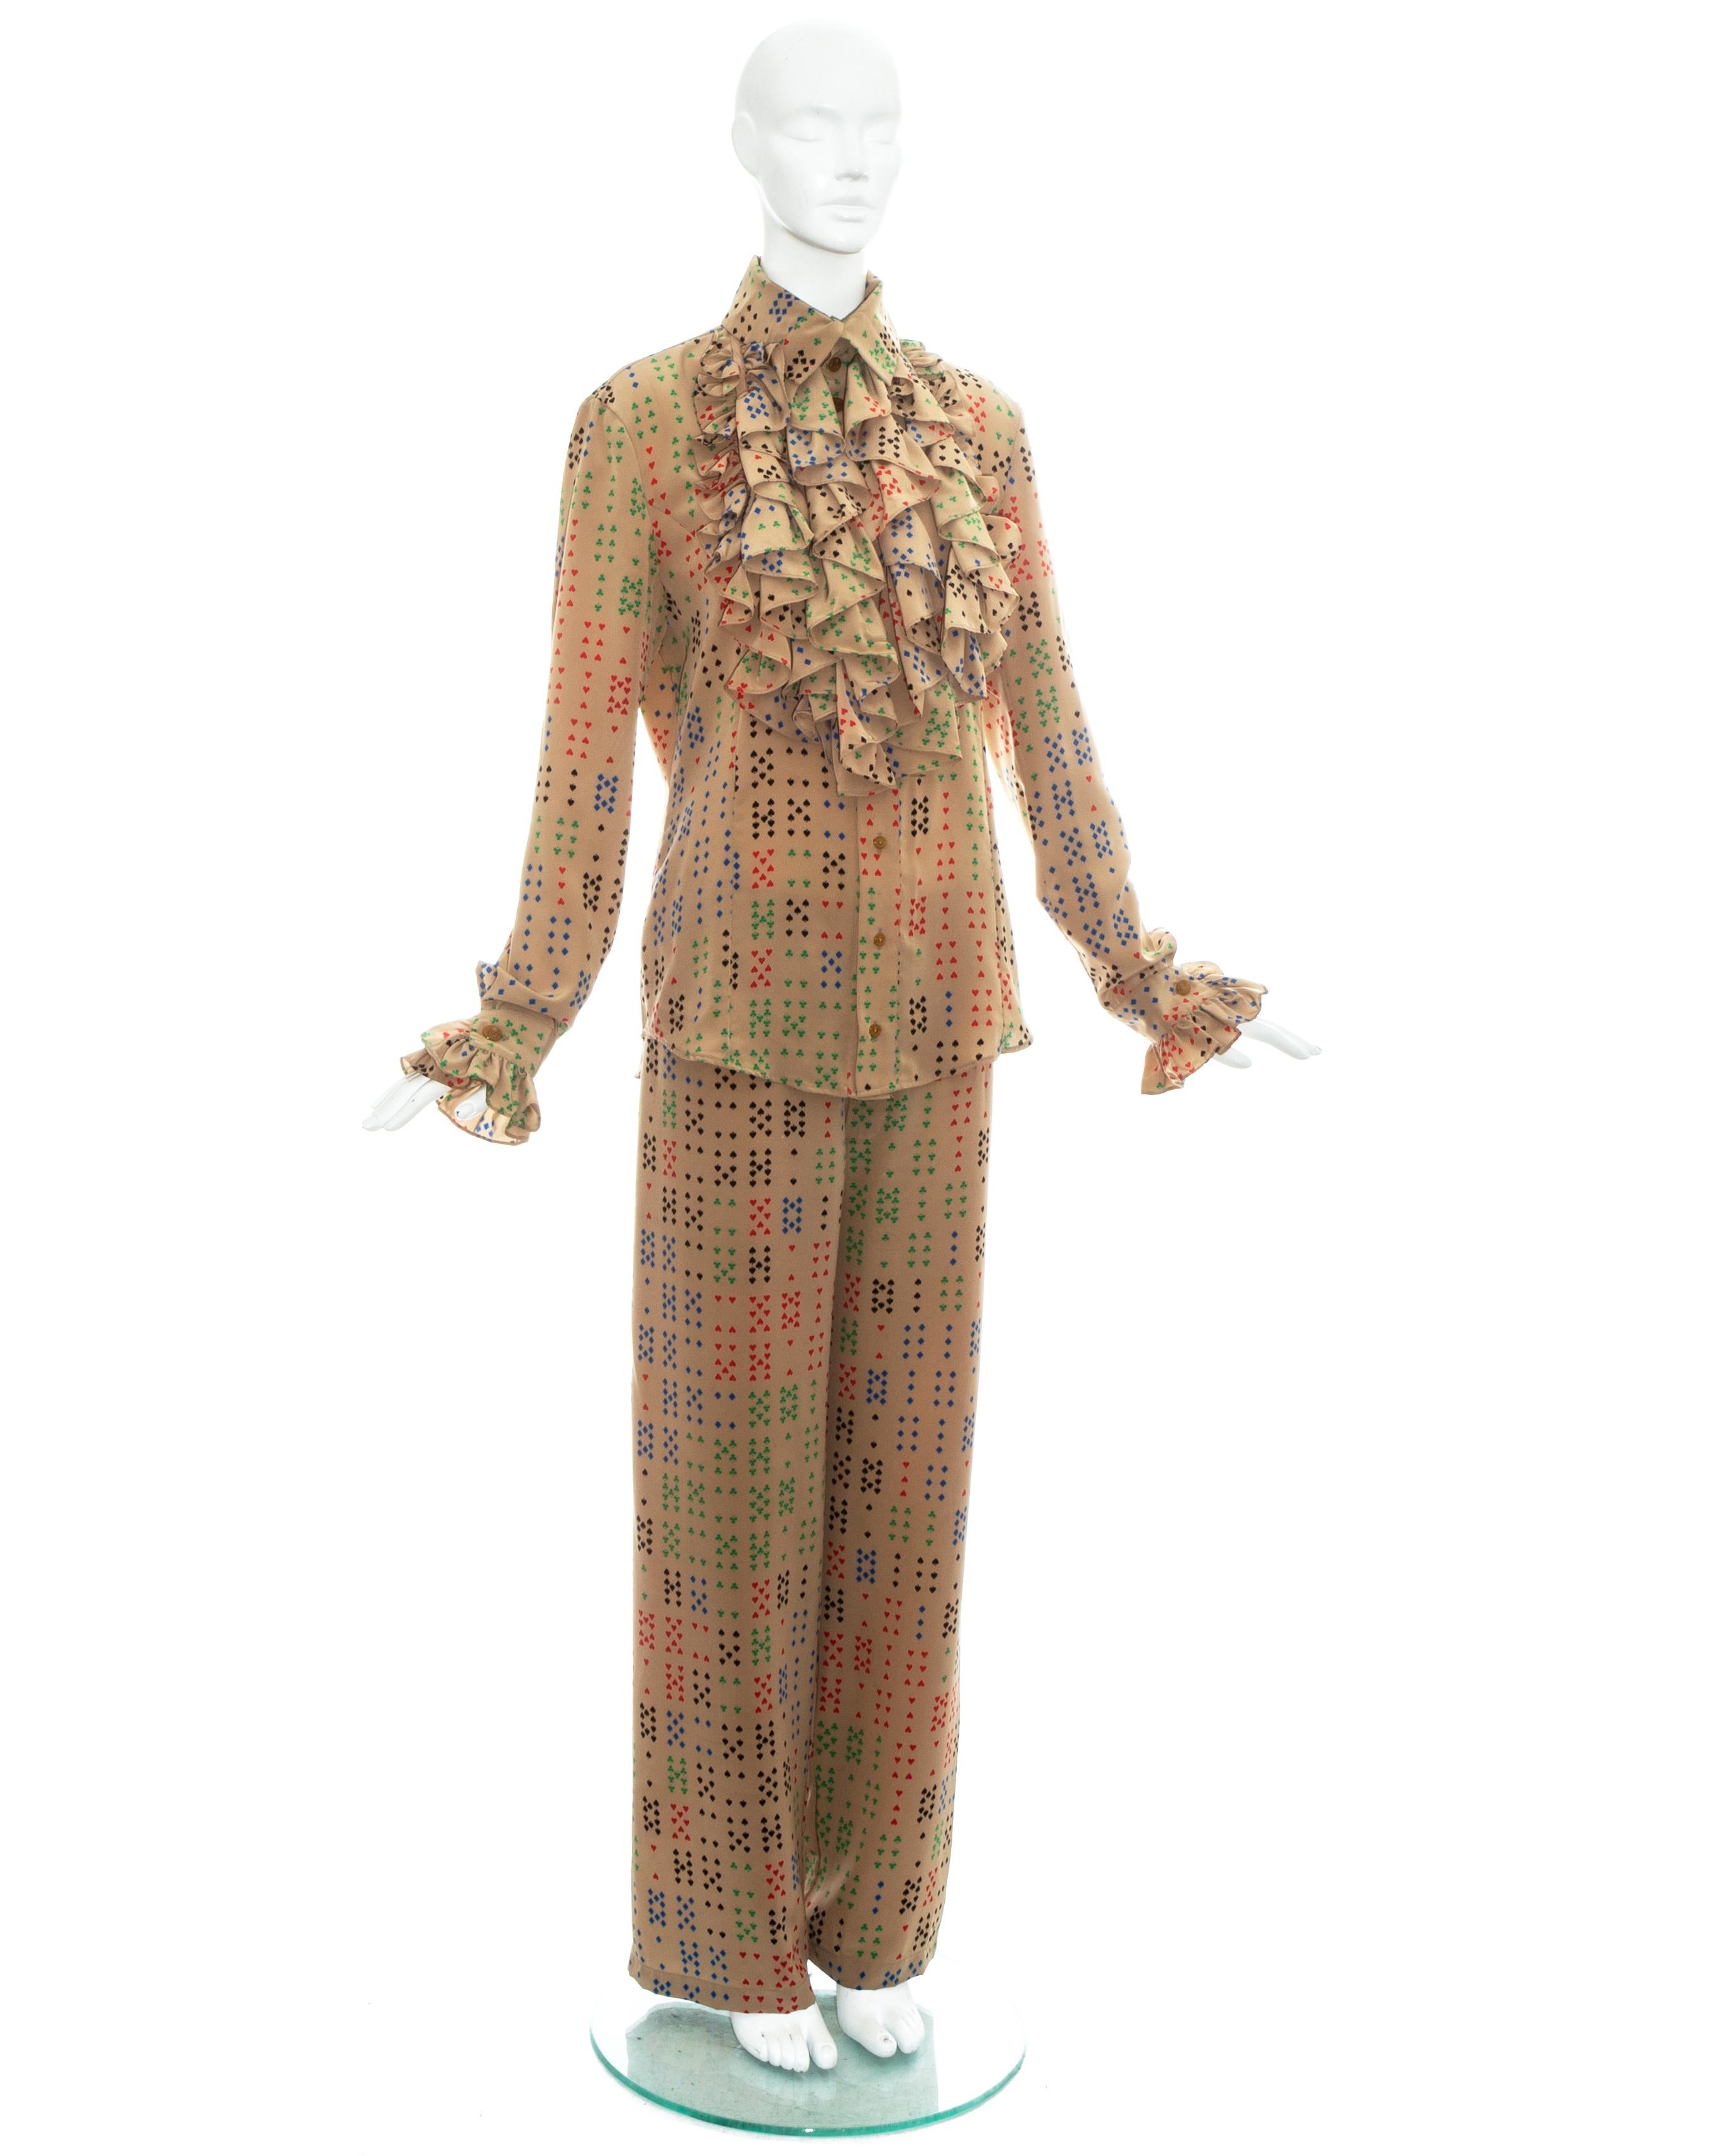 Costume pantalon en polyester fauve pour homme de Vivienne Westwood, avec impression de symboles de cartes à jouer. Pantalon large à taille élastique et chemise à volants.

Printemps-été 1997